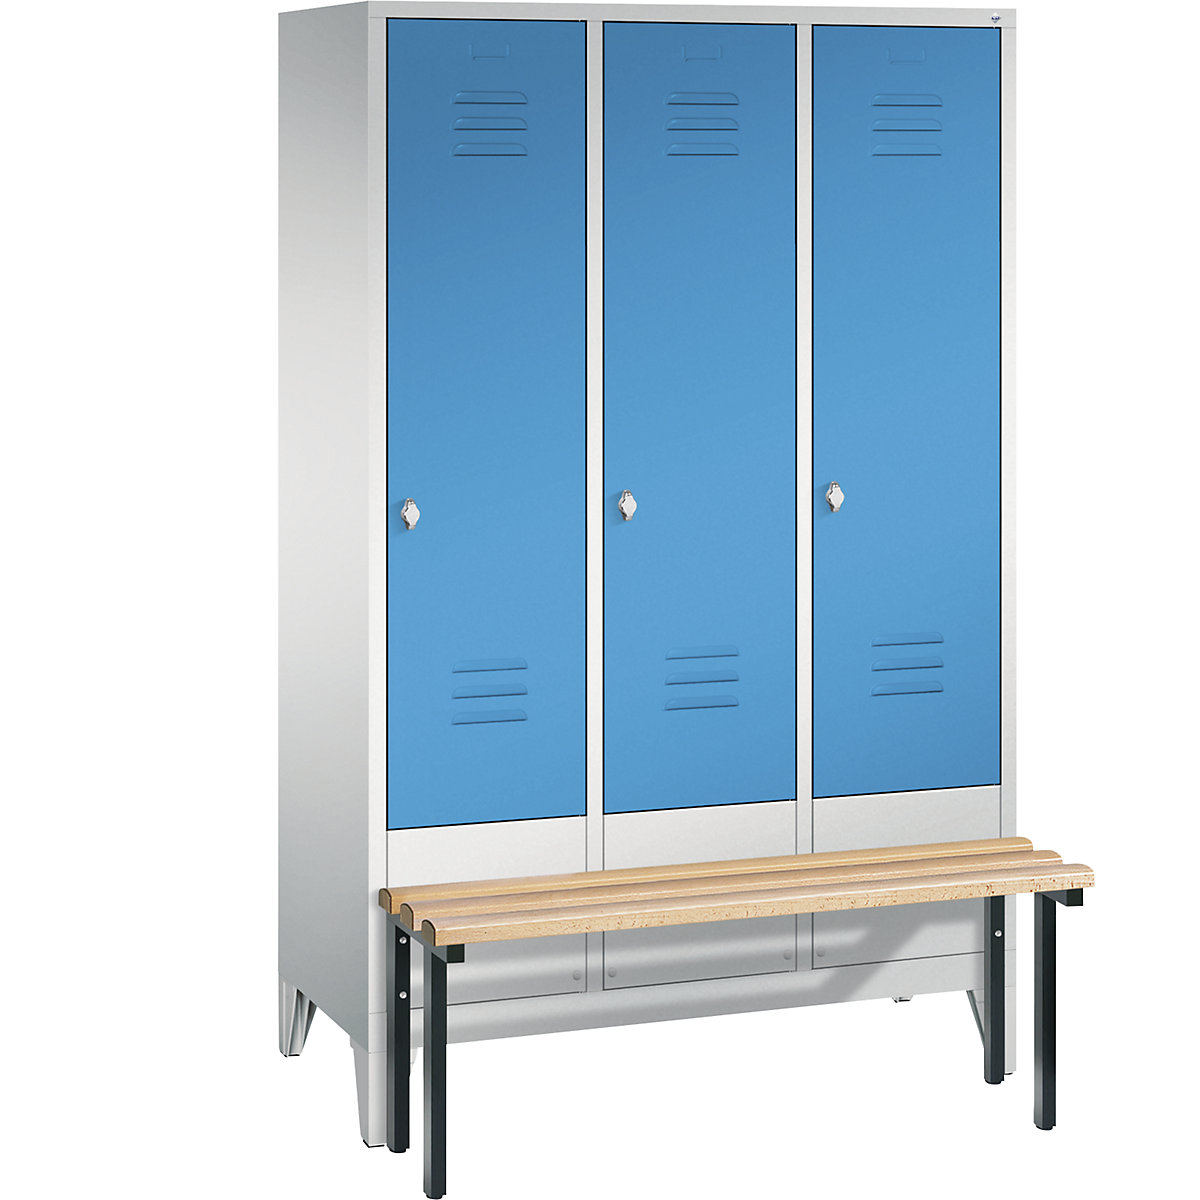 Garderobna omara CLASSIC s klopjo – C+P, 3 predelki, širina 400 mm/predelek, svetlo sive / svetlo modre barve-11